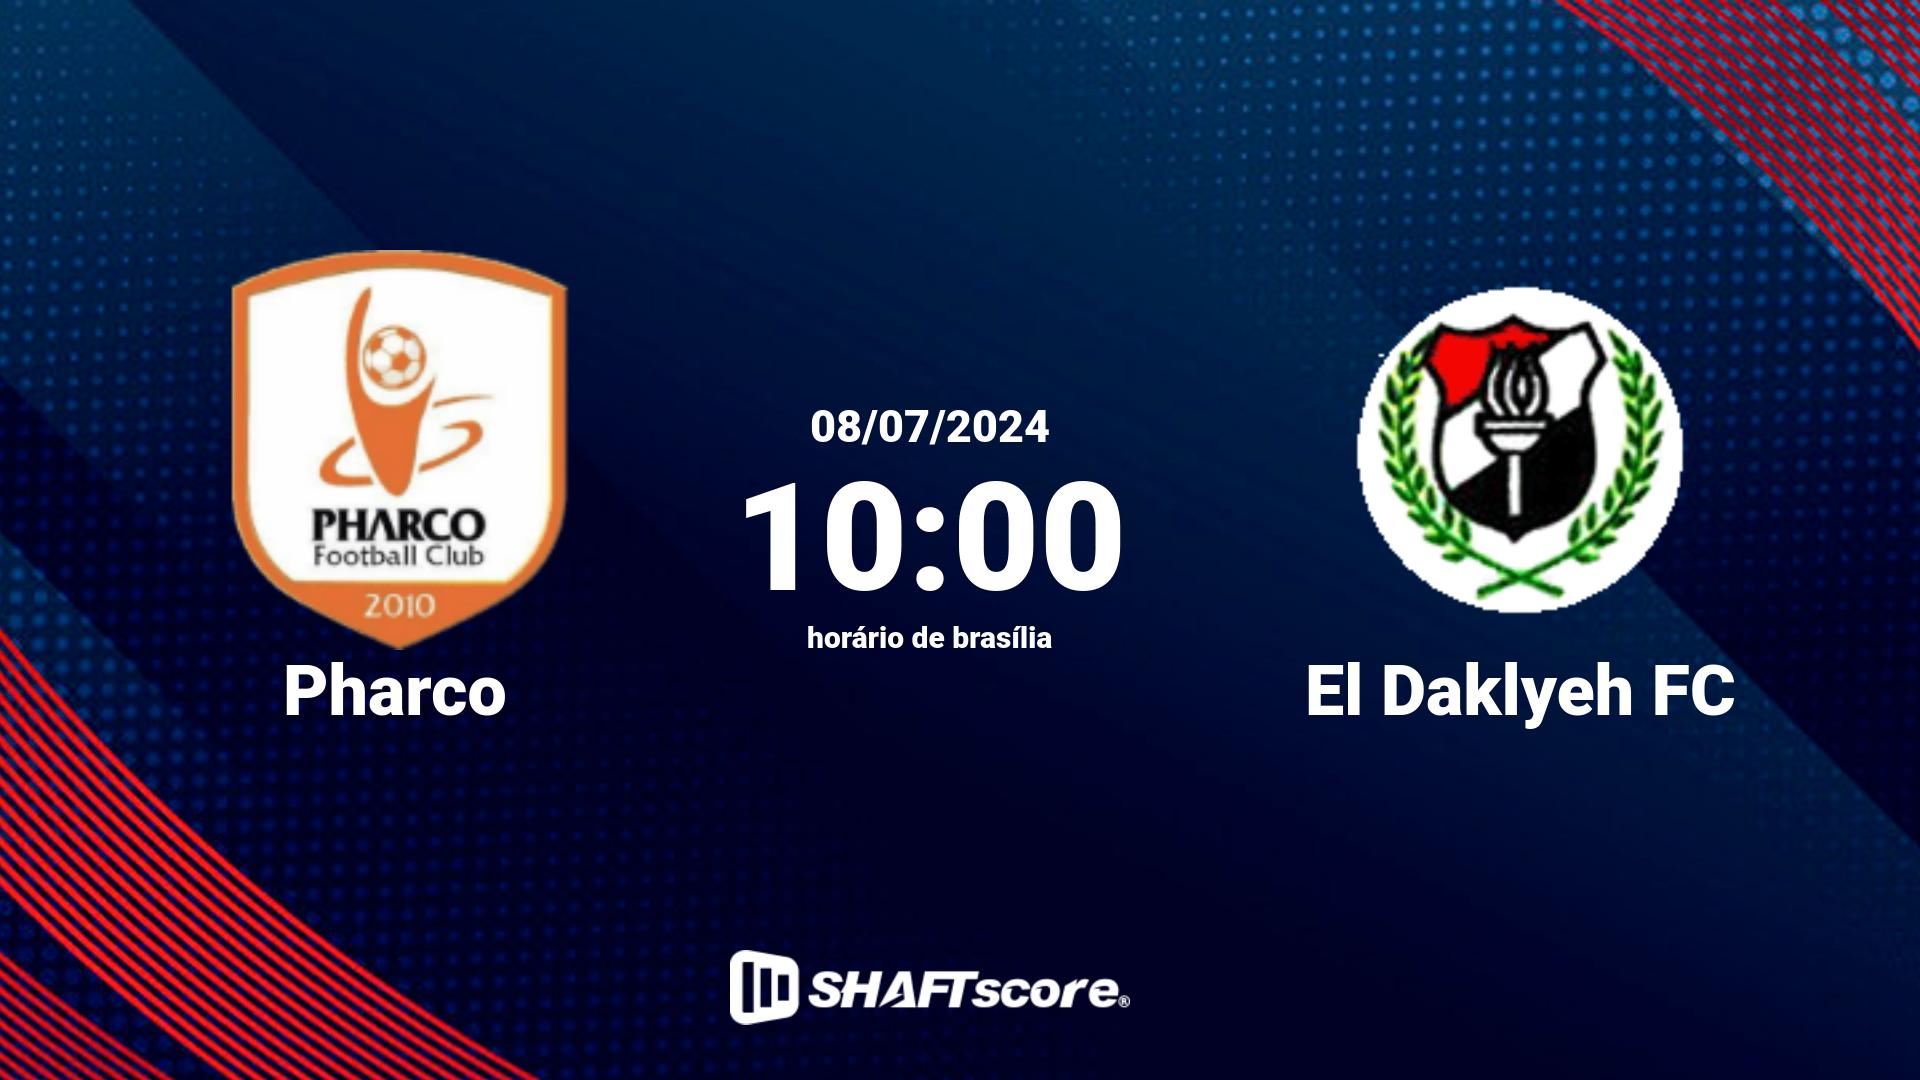 Estatísticas do jogo Pharco vs El Daklyeh FC 08.07 10:00